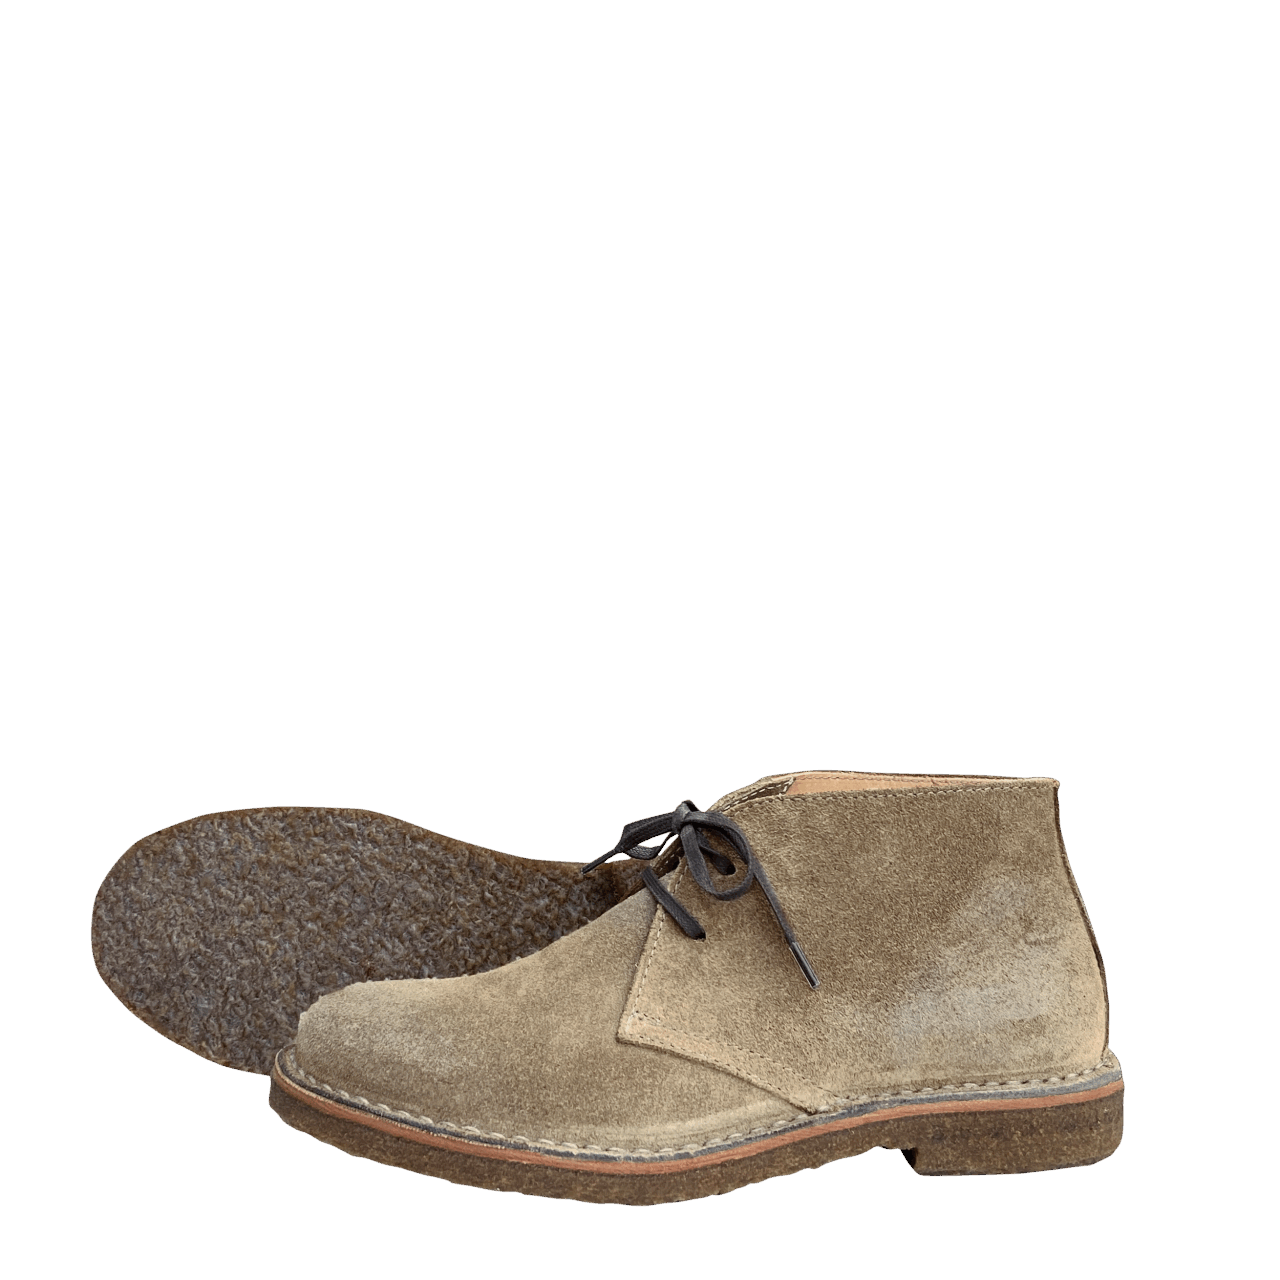 Astorflex Greenflex Desert Boot - stone waxed